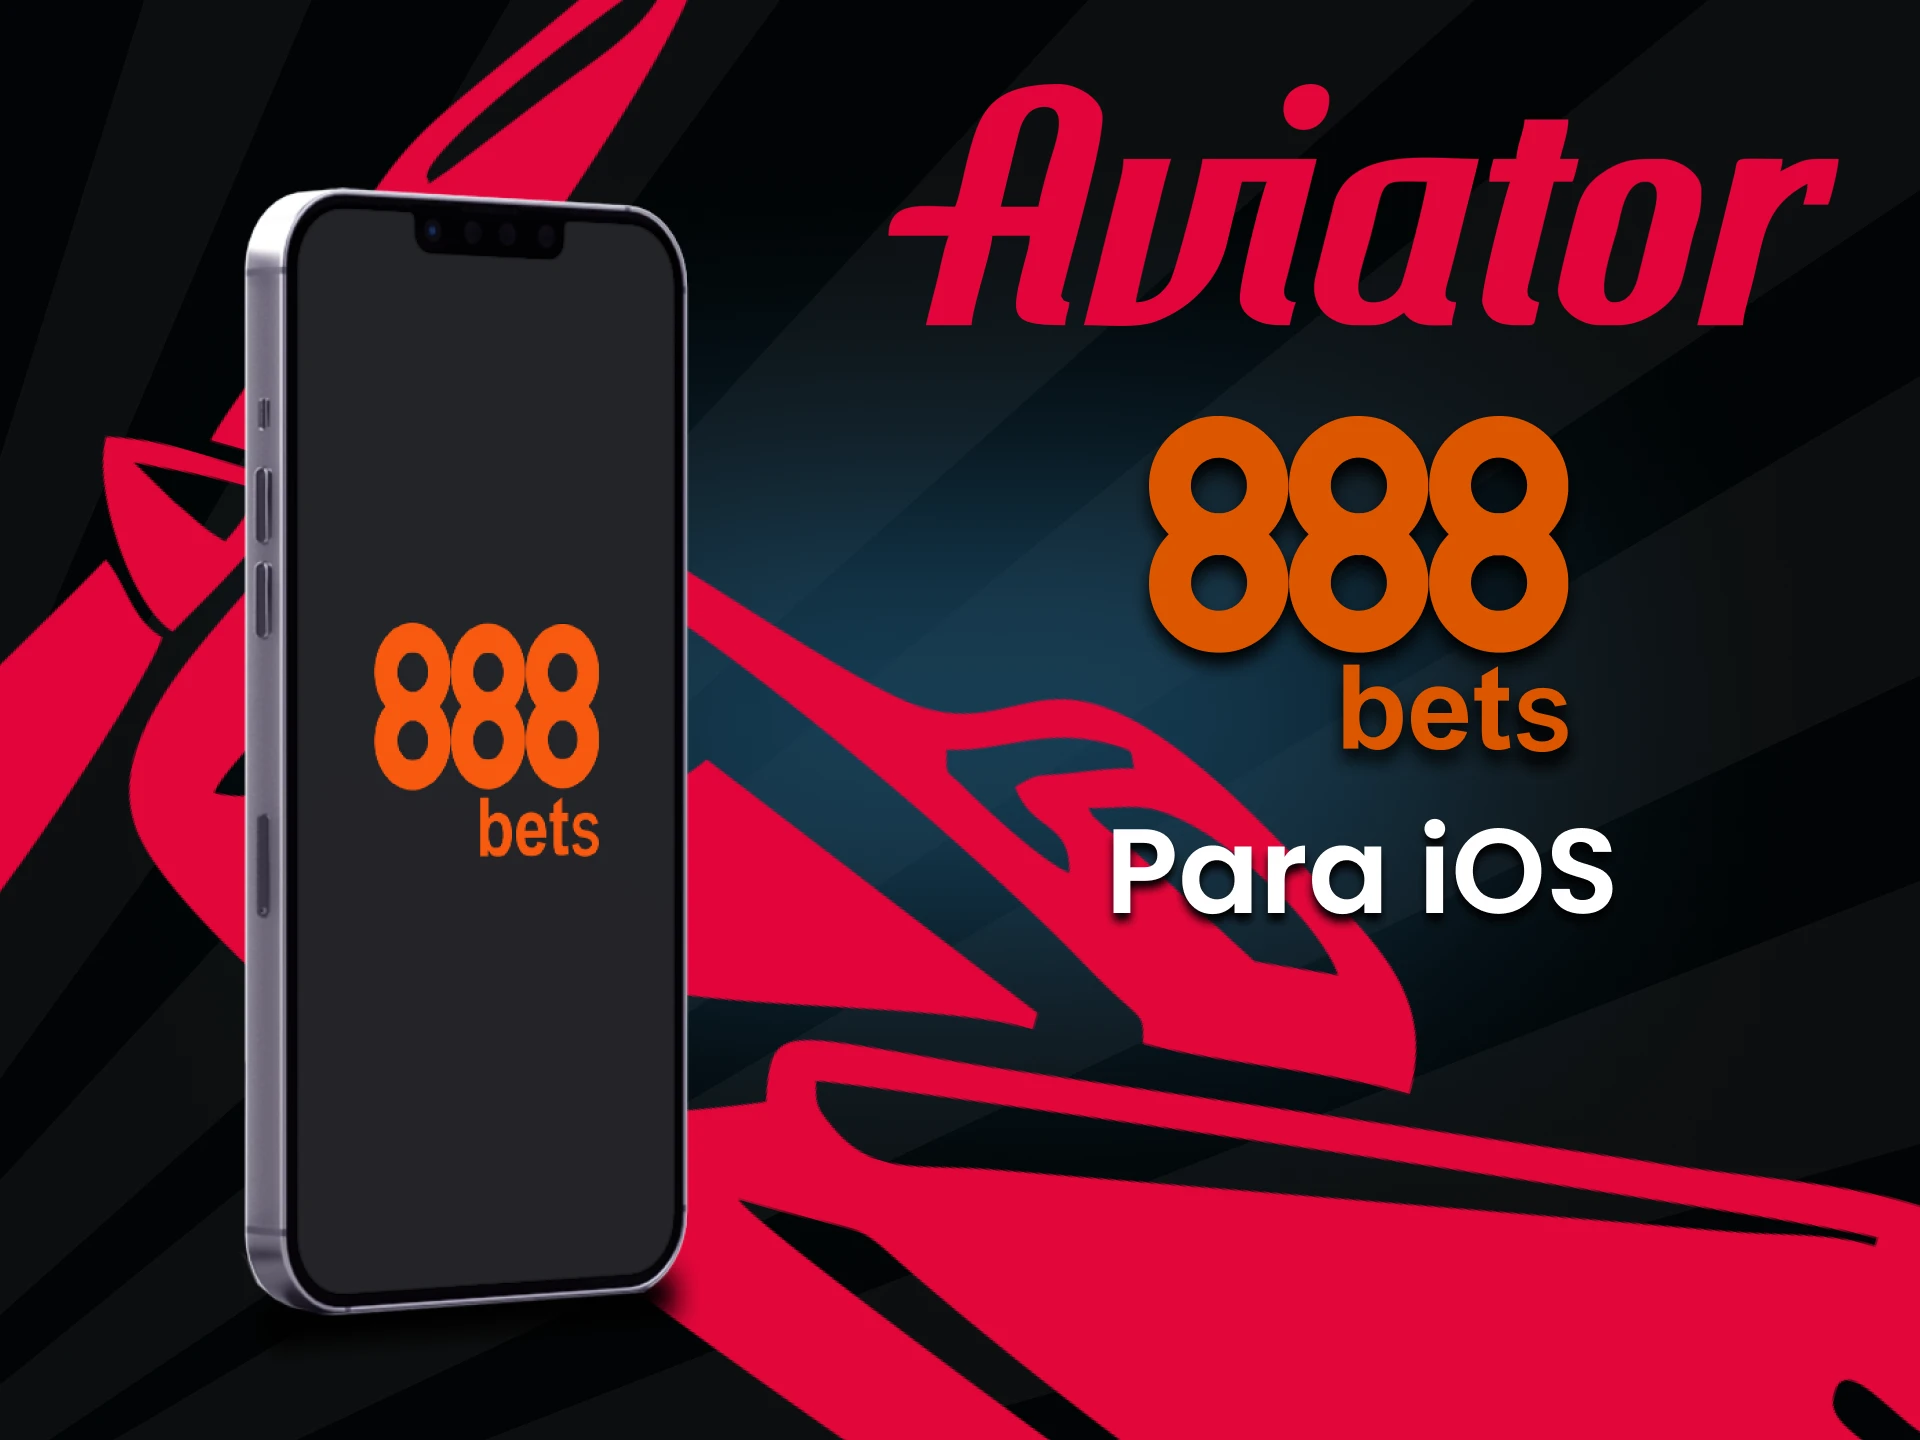 Jogue Aviator no 888bets através do seu dispositivo iOS.